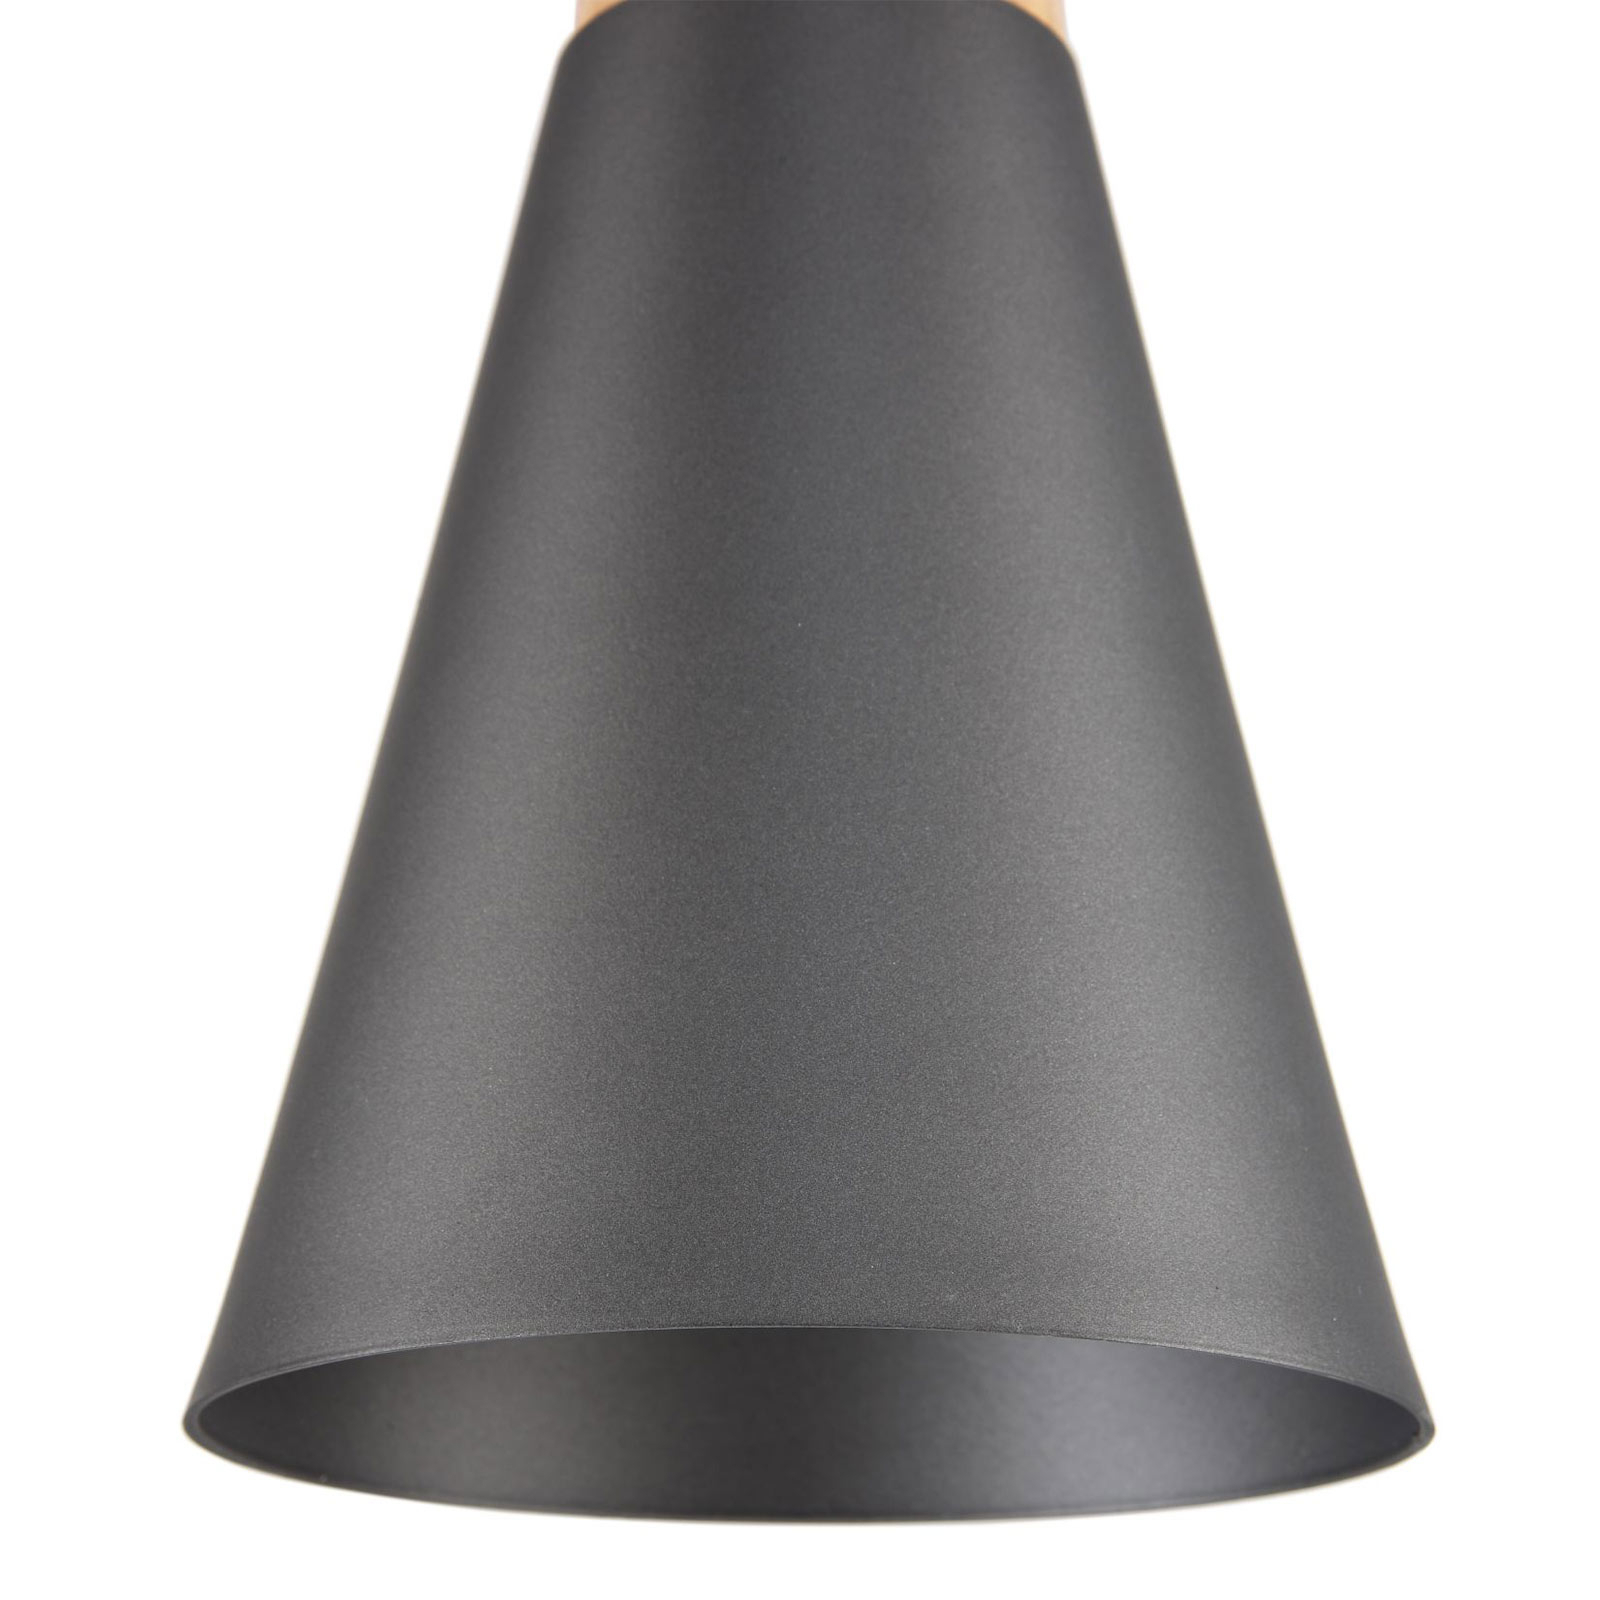 Lampa wisząca Bicones w kolorze czarnym, Ø 14cm